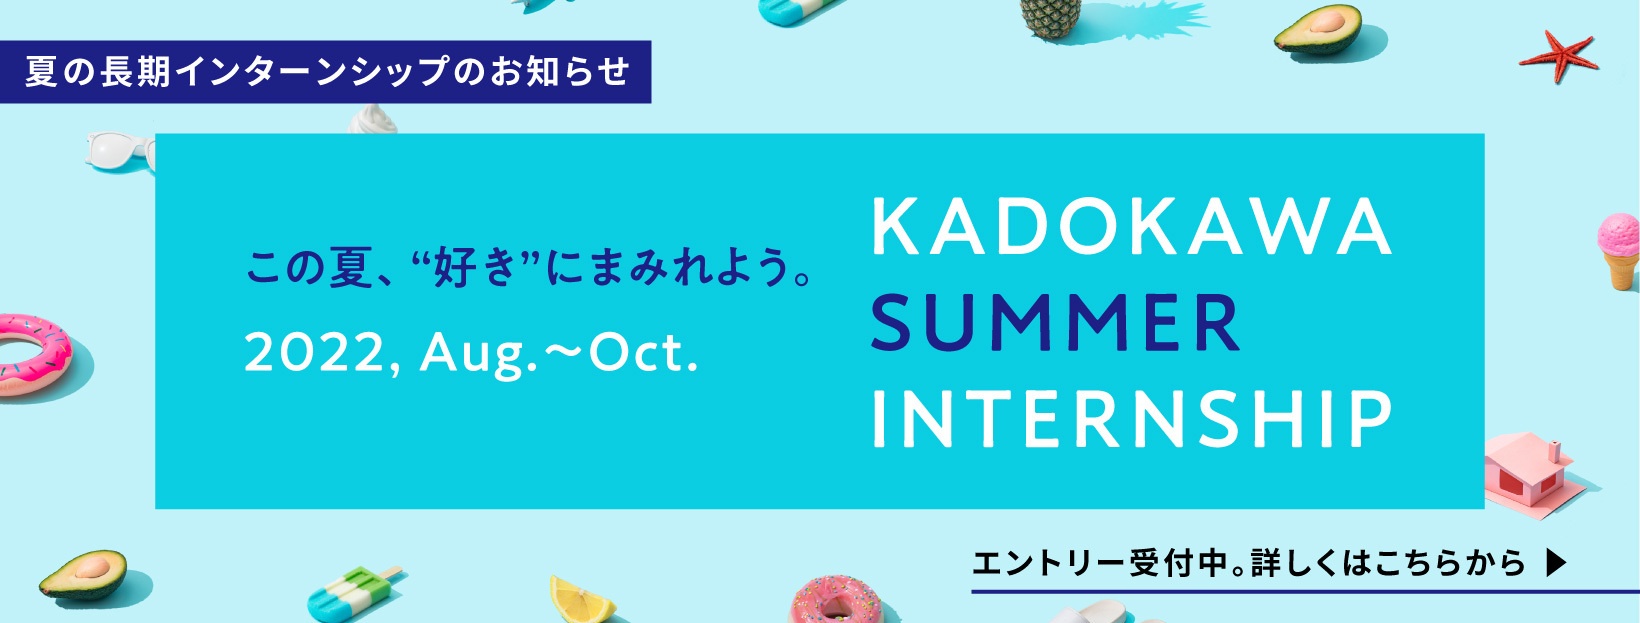 KADOKAWA SUMMER INTERNSHIP